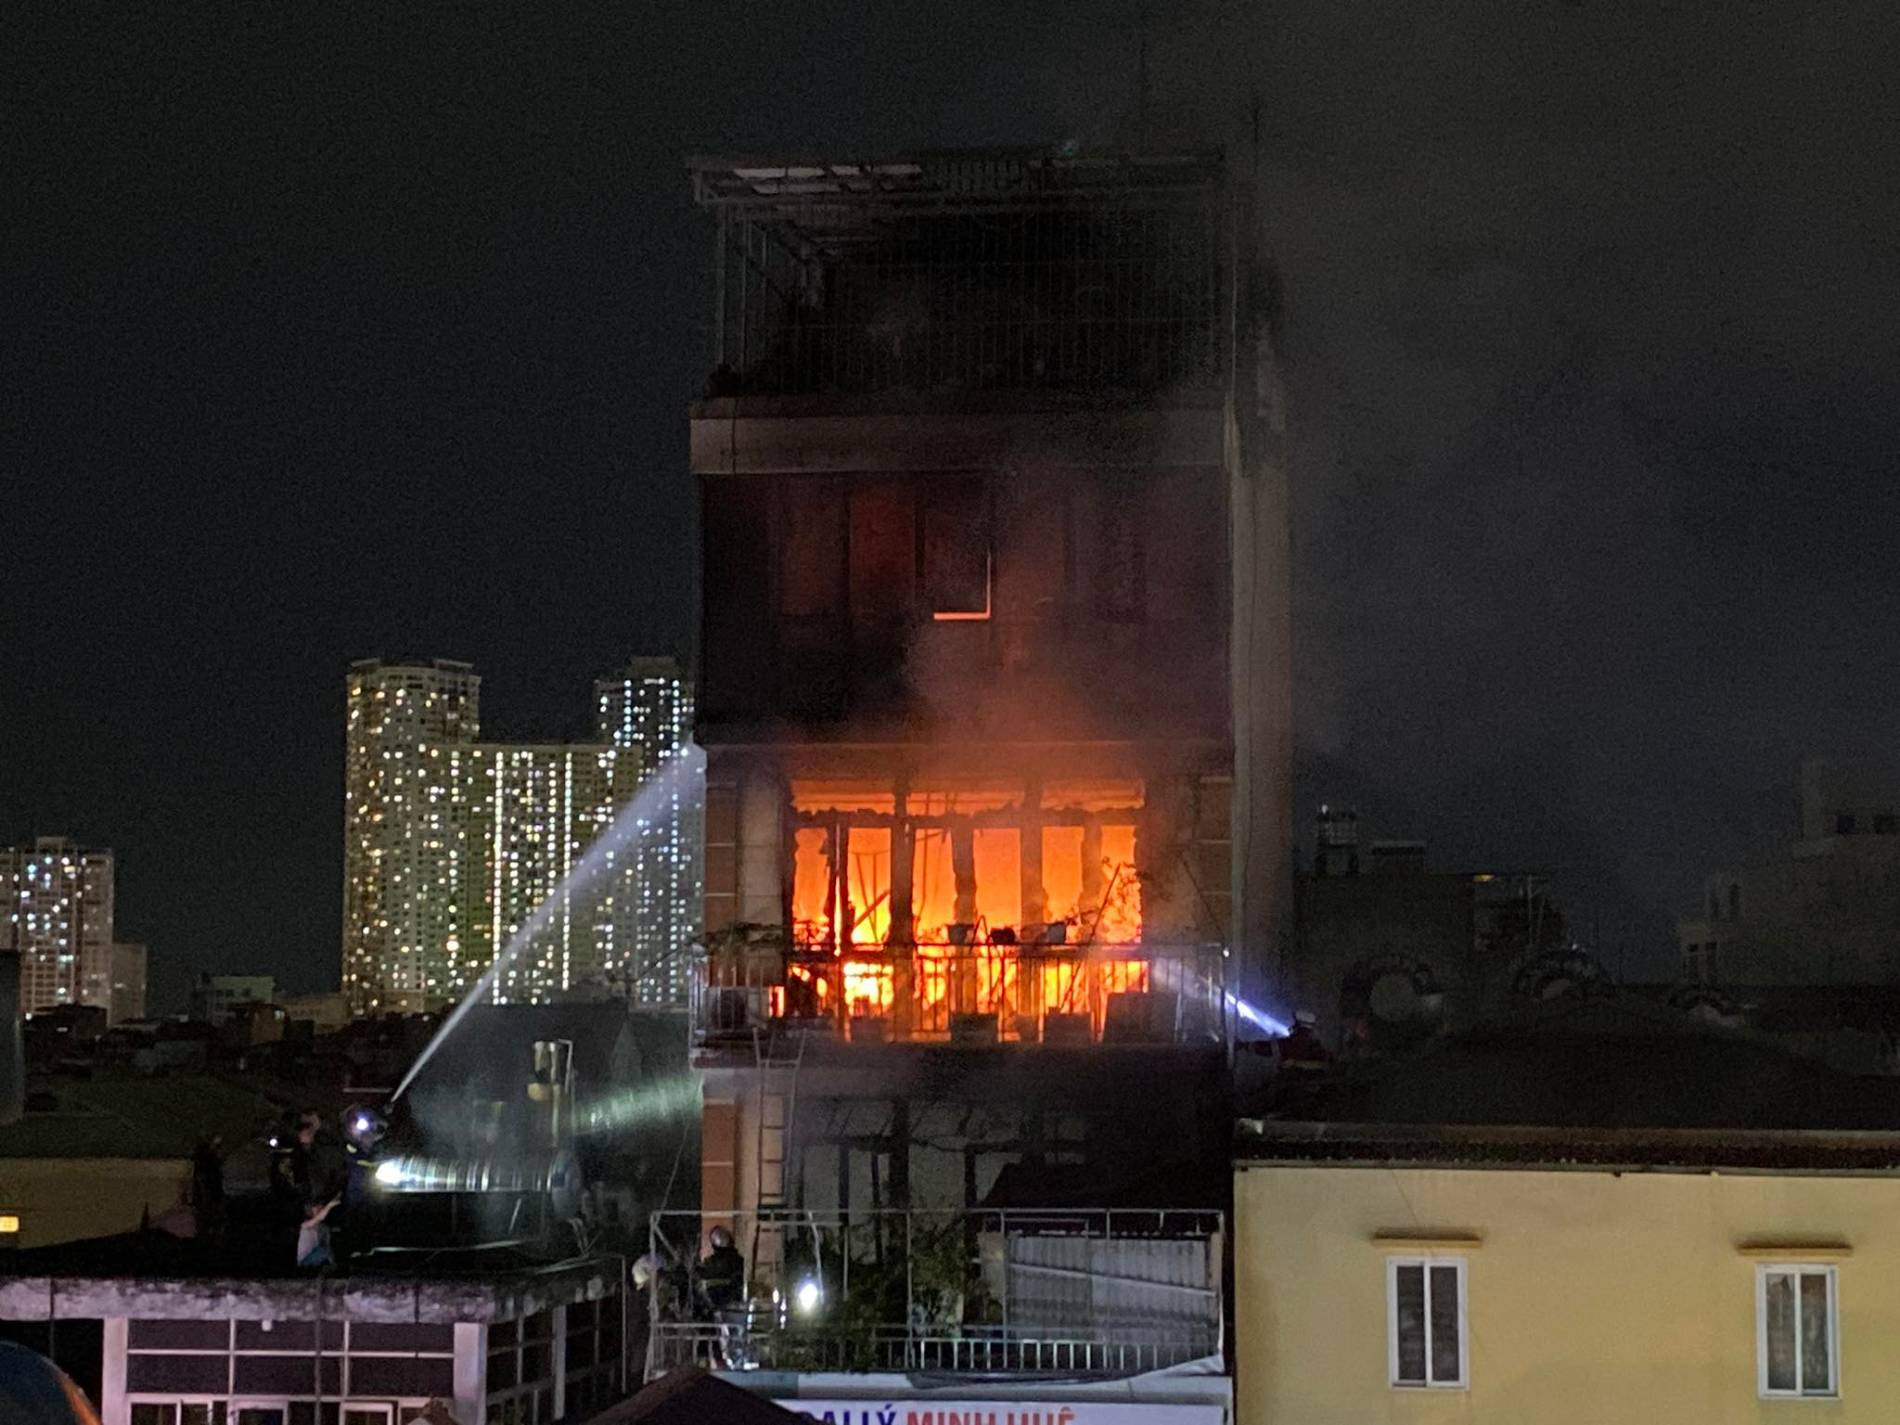 Cháy lớn, nhiều người mắc kẹt trong ngôi nhà tại Hoàng Mai, tầng 6 lửa vẫn cháy đỏ rực, lính cứu hỏa chưa tiếp cận được - Ảnh 3